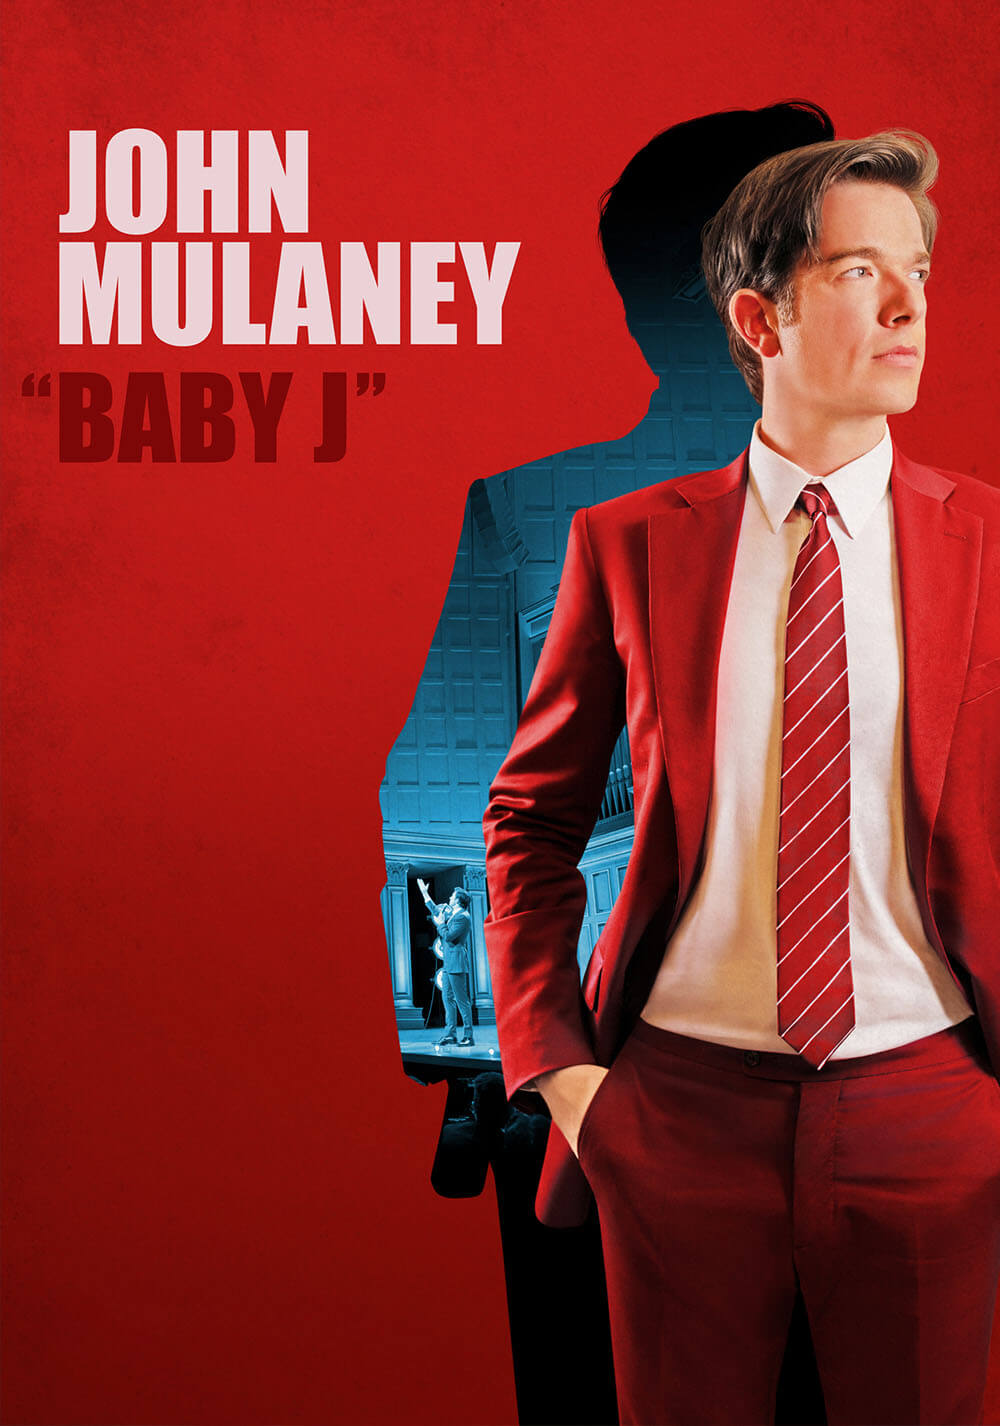 جان مولانی: بچه جی (John Mulaney: Baby J)